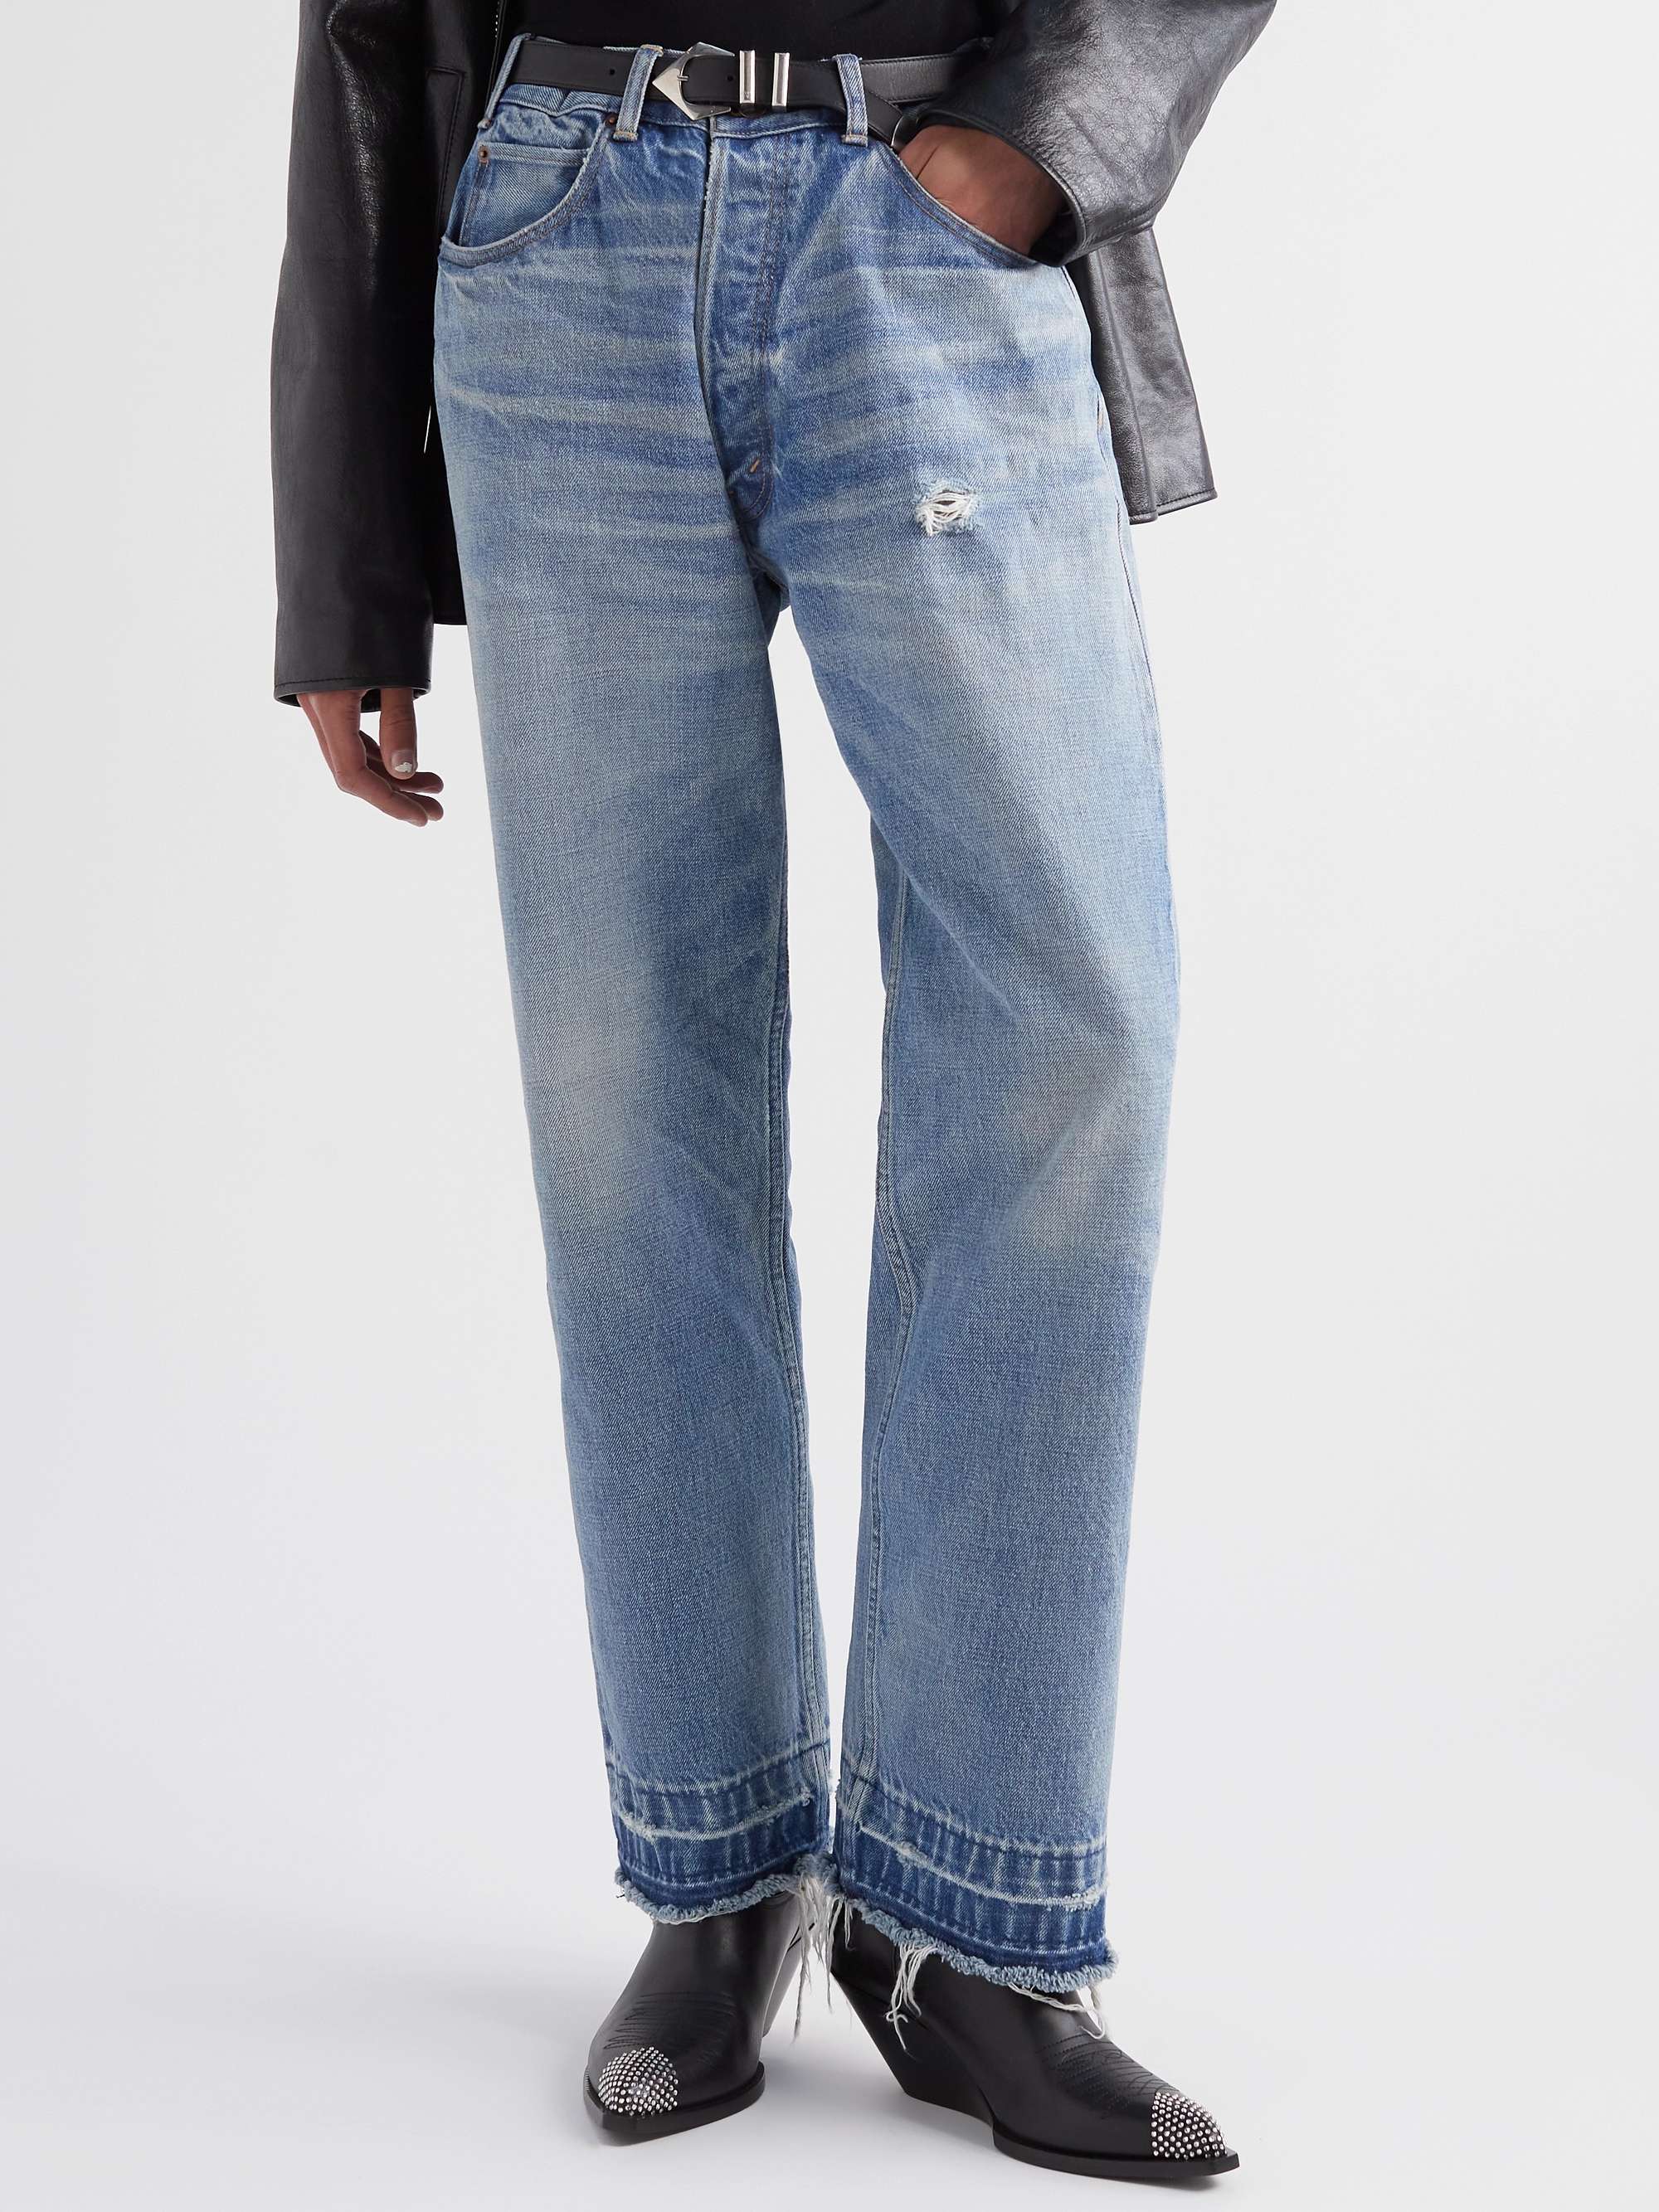 CELINE HOMME Wesley Straight-Leg Distressed Jeans | MR PORTER